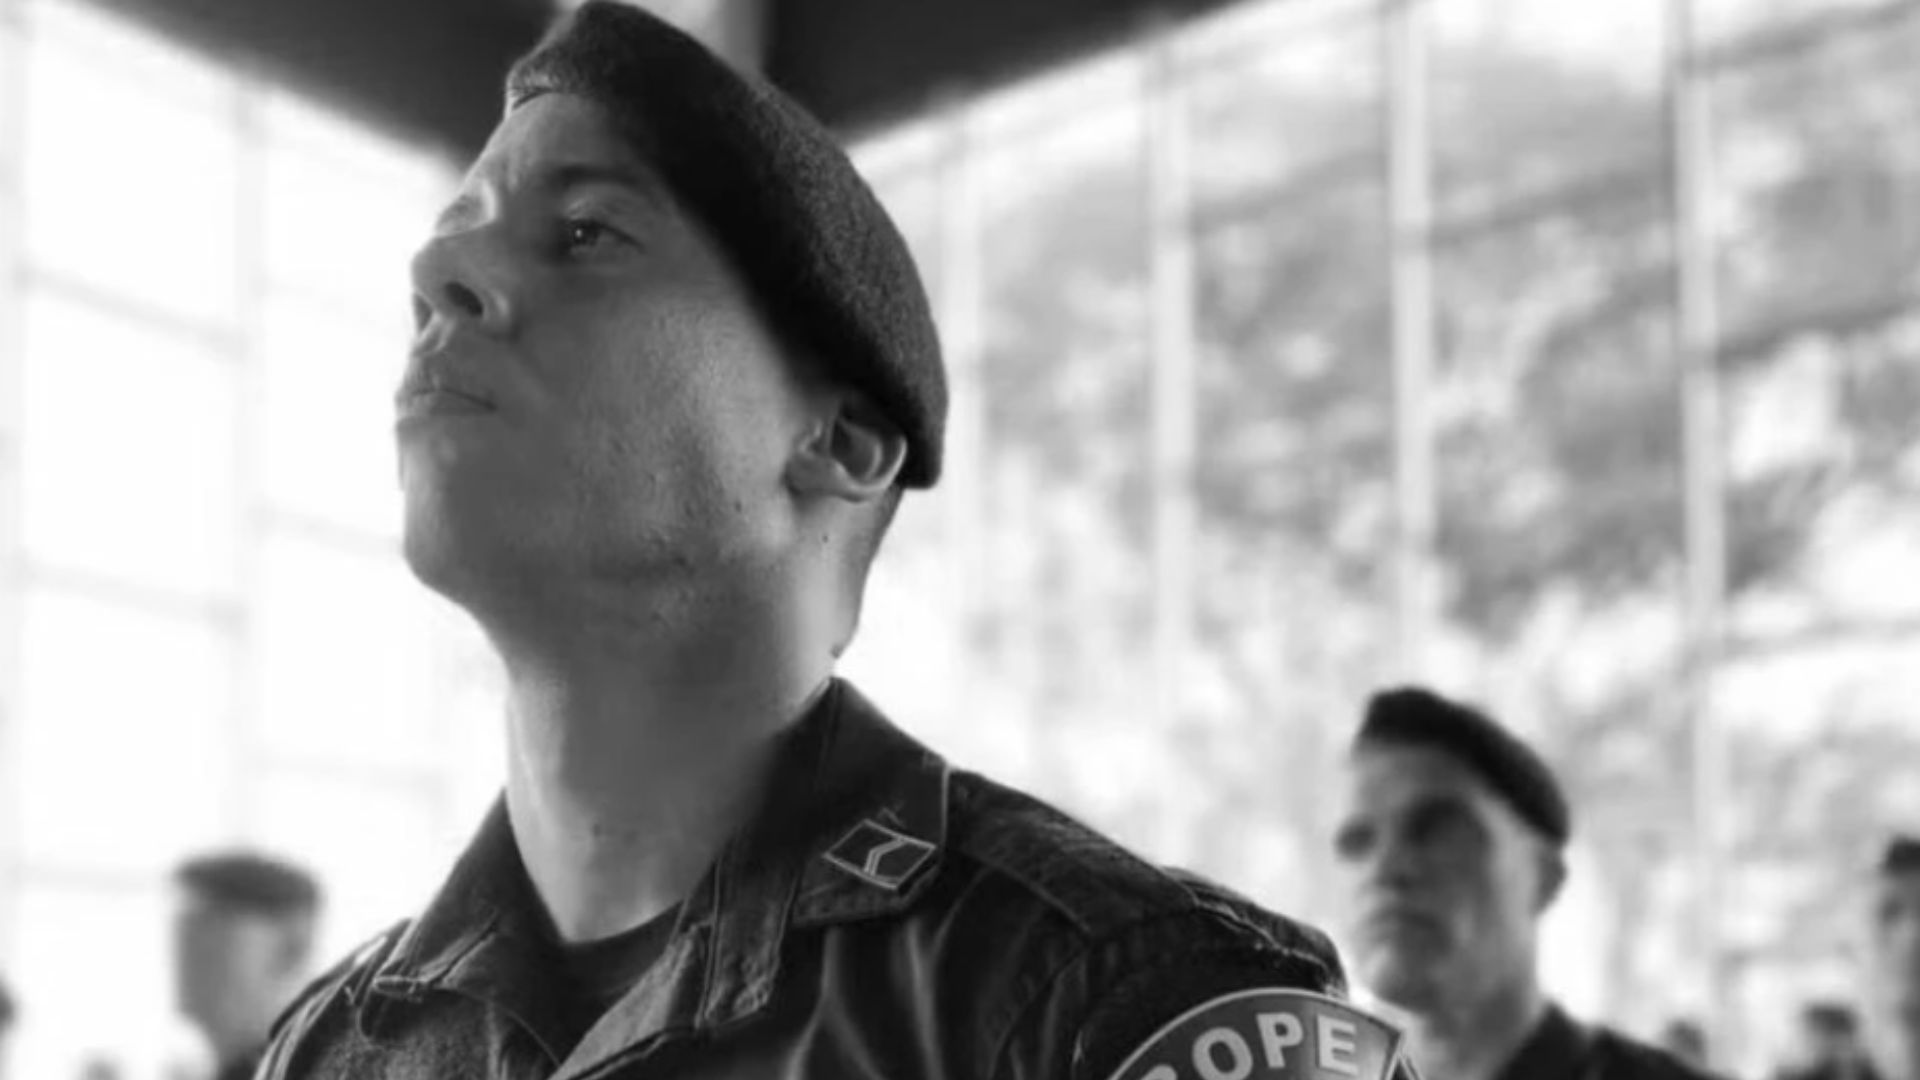 Sargento do Bope foi morto durante operação no Complexo da Maré. Foto: Divulgação